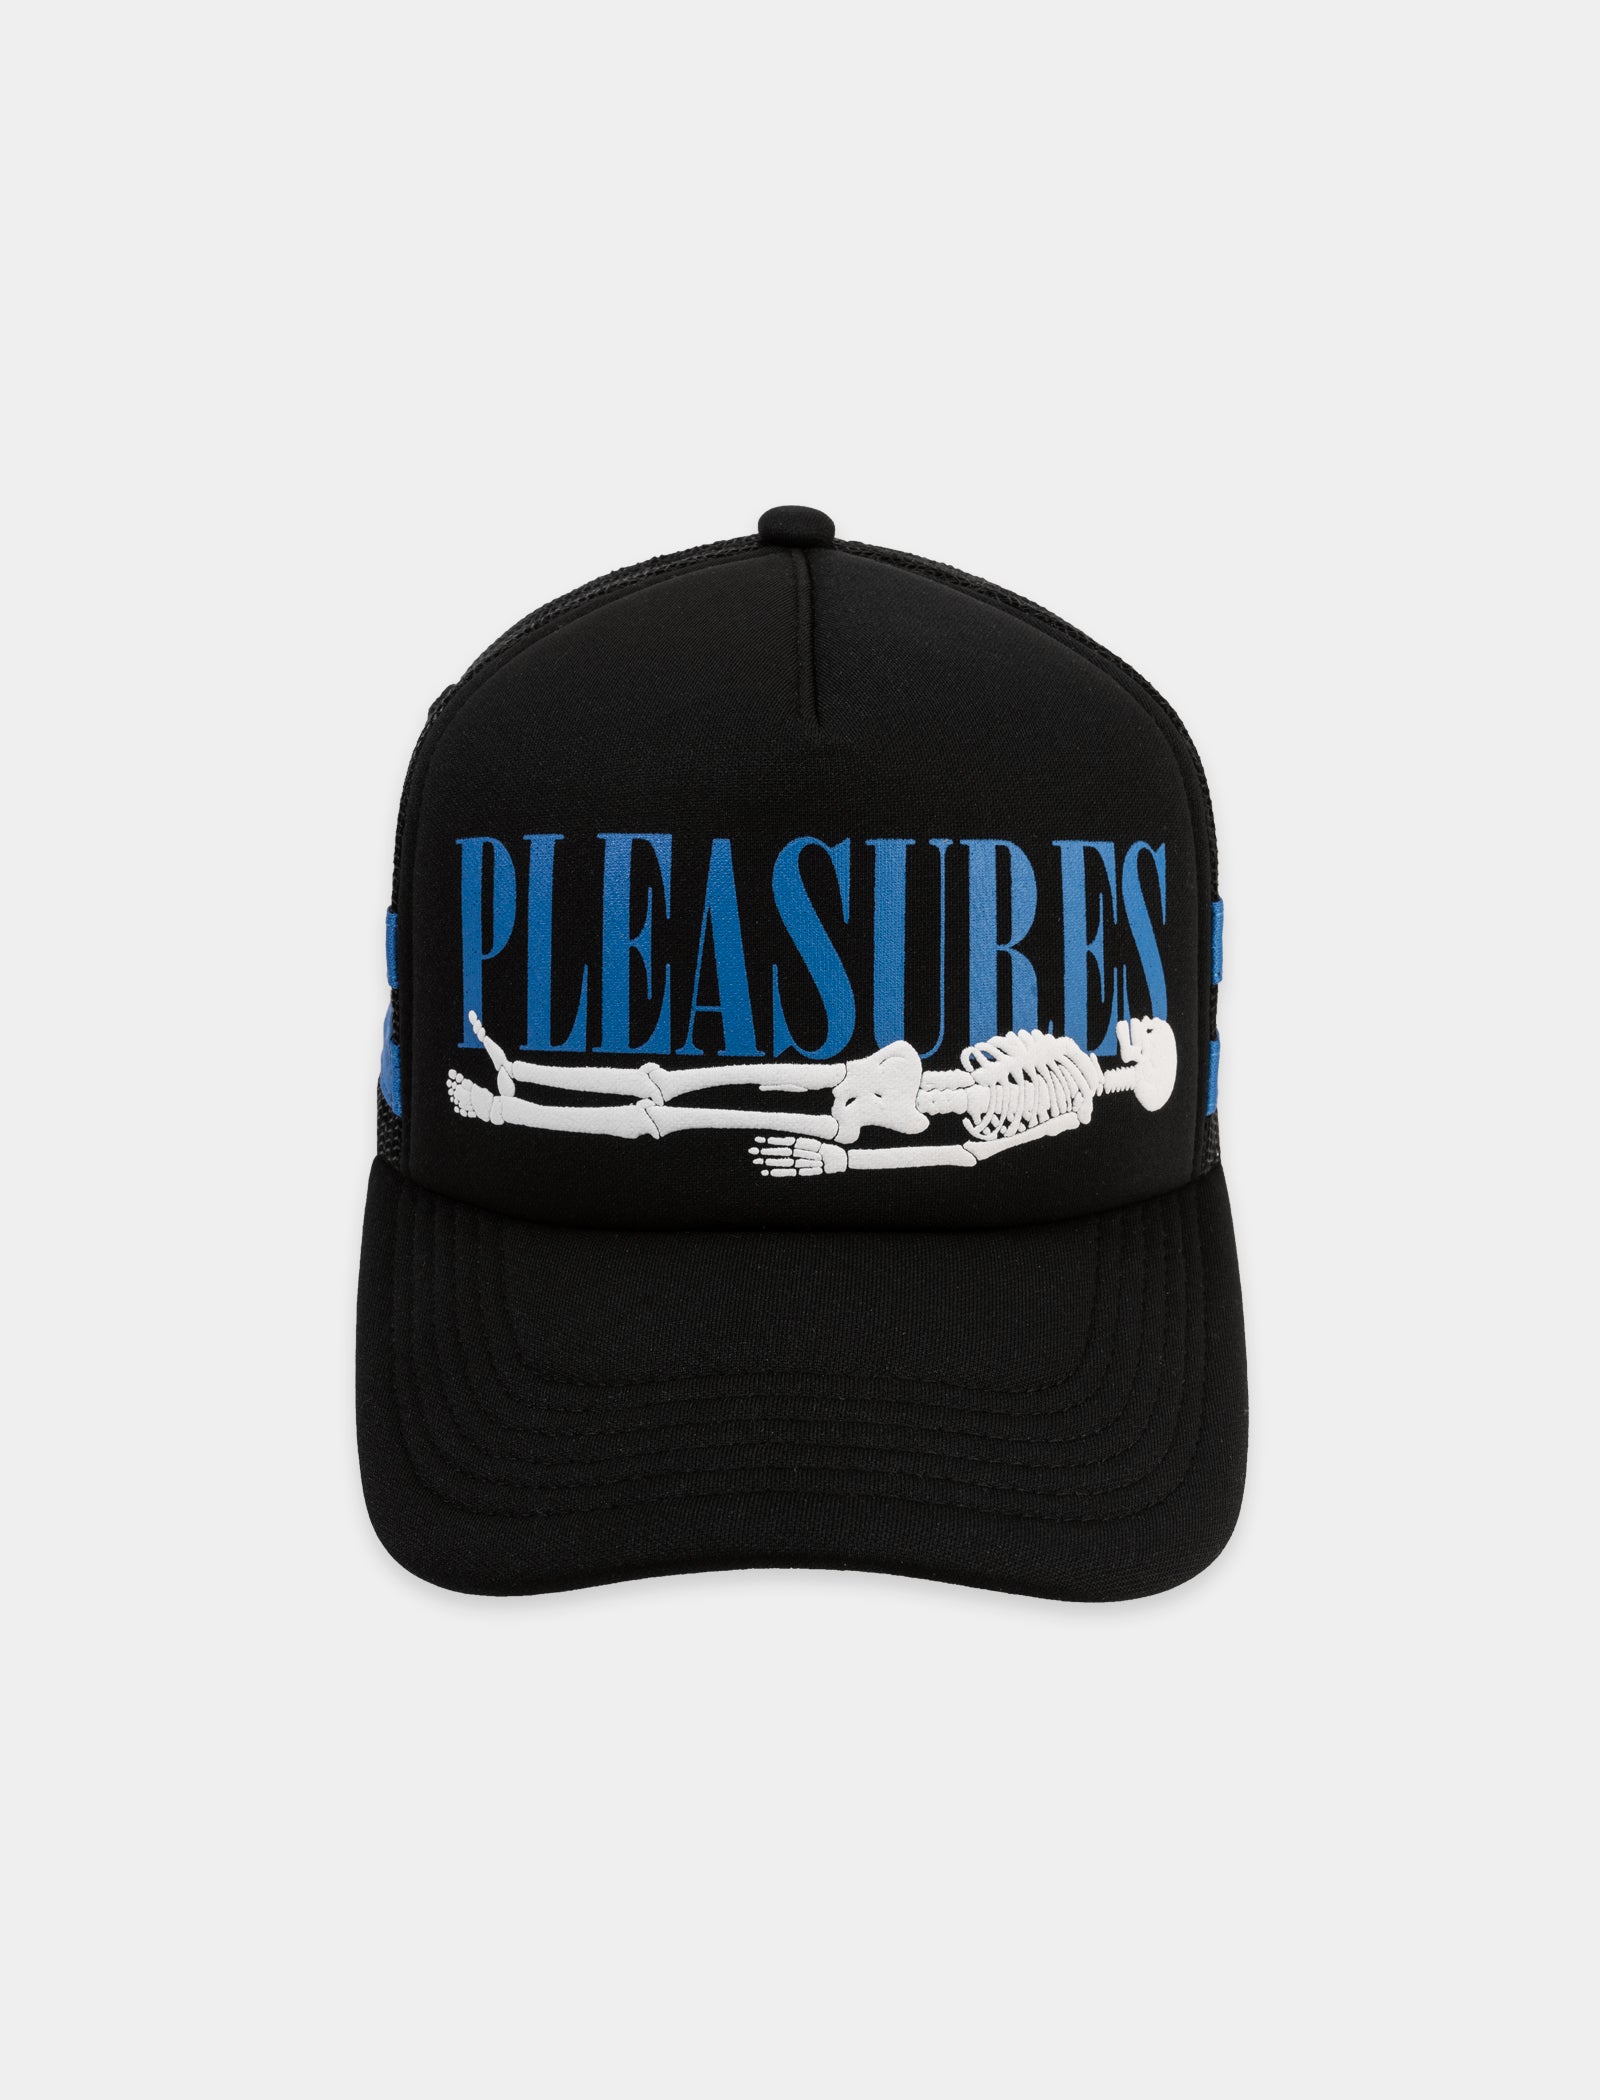 PLEASURES BONES TRUCKER HAT